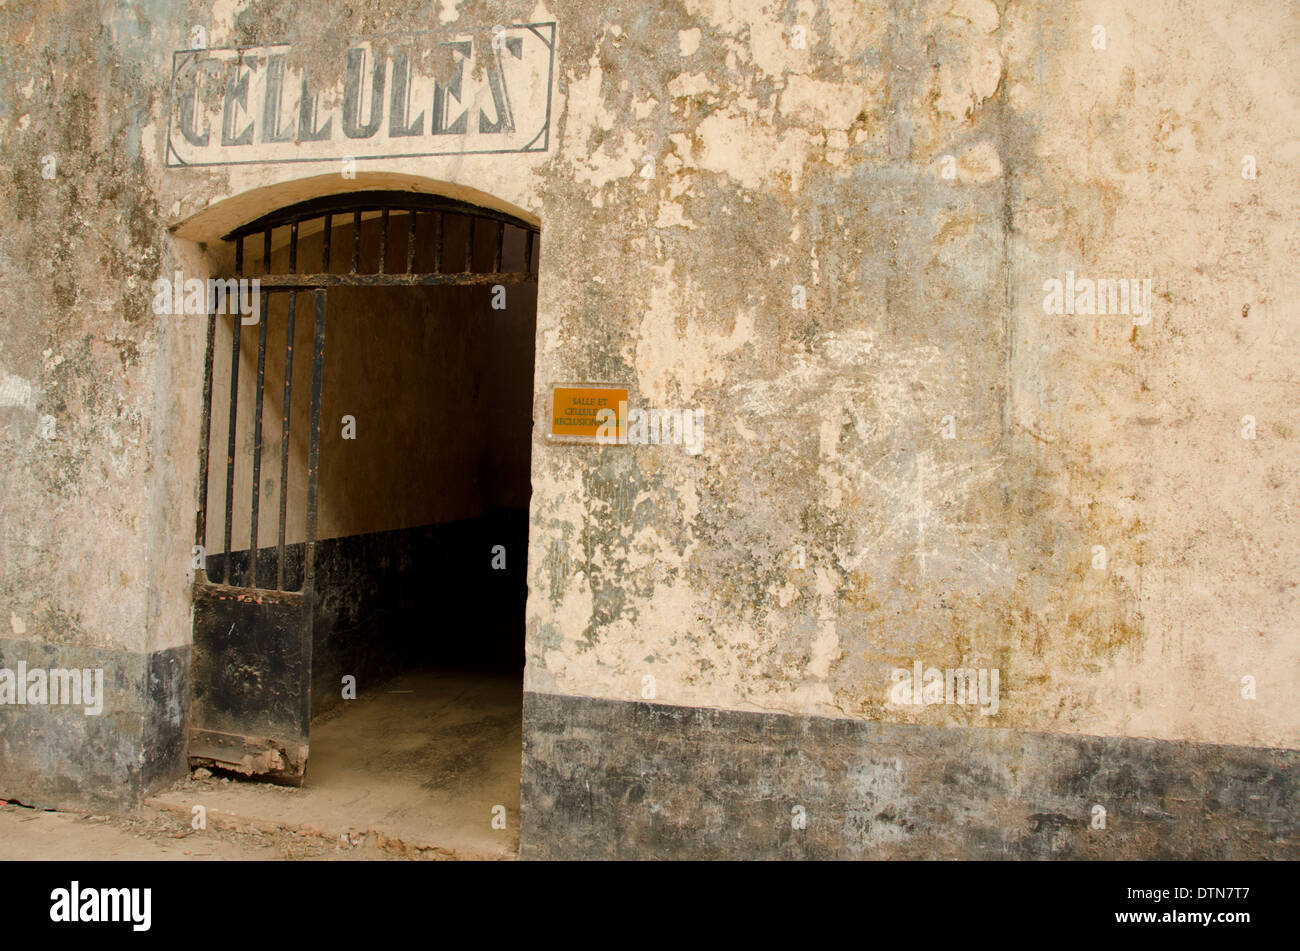 Guyane, Iles du salut. L'île Royale, ruines de l'infâme colonie pénitentiaire. Les cellules d'isolement du prisonnier. Banque D'Images